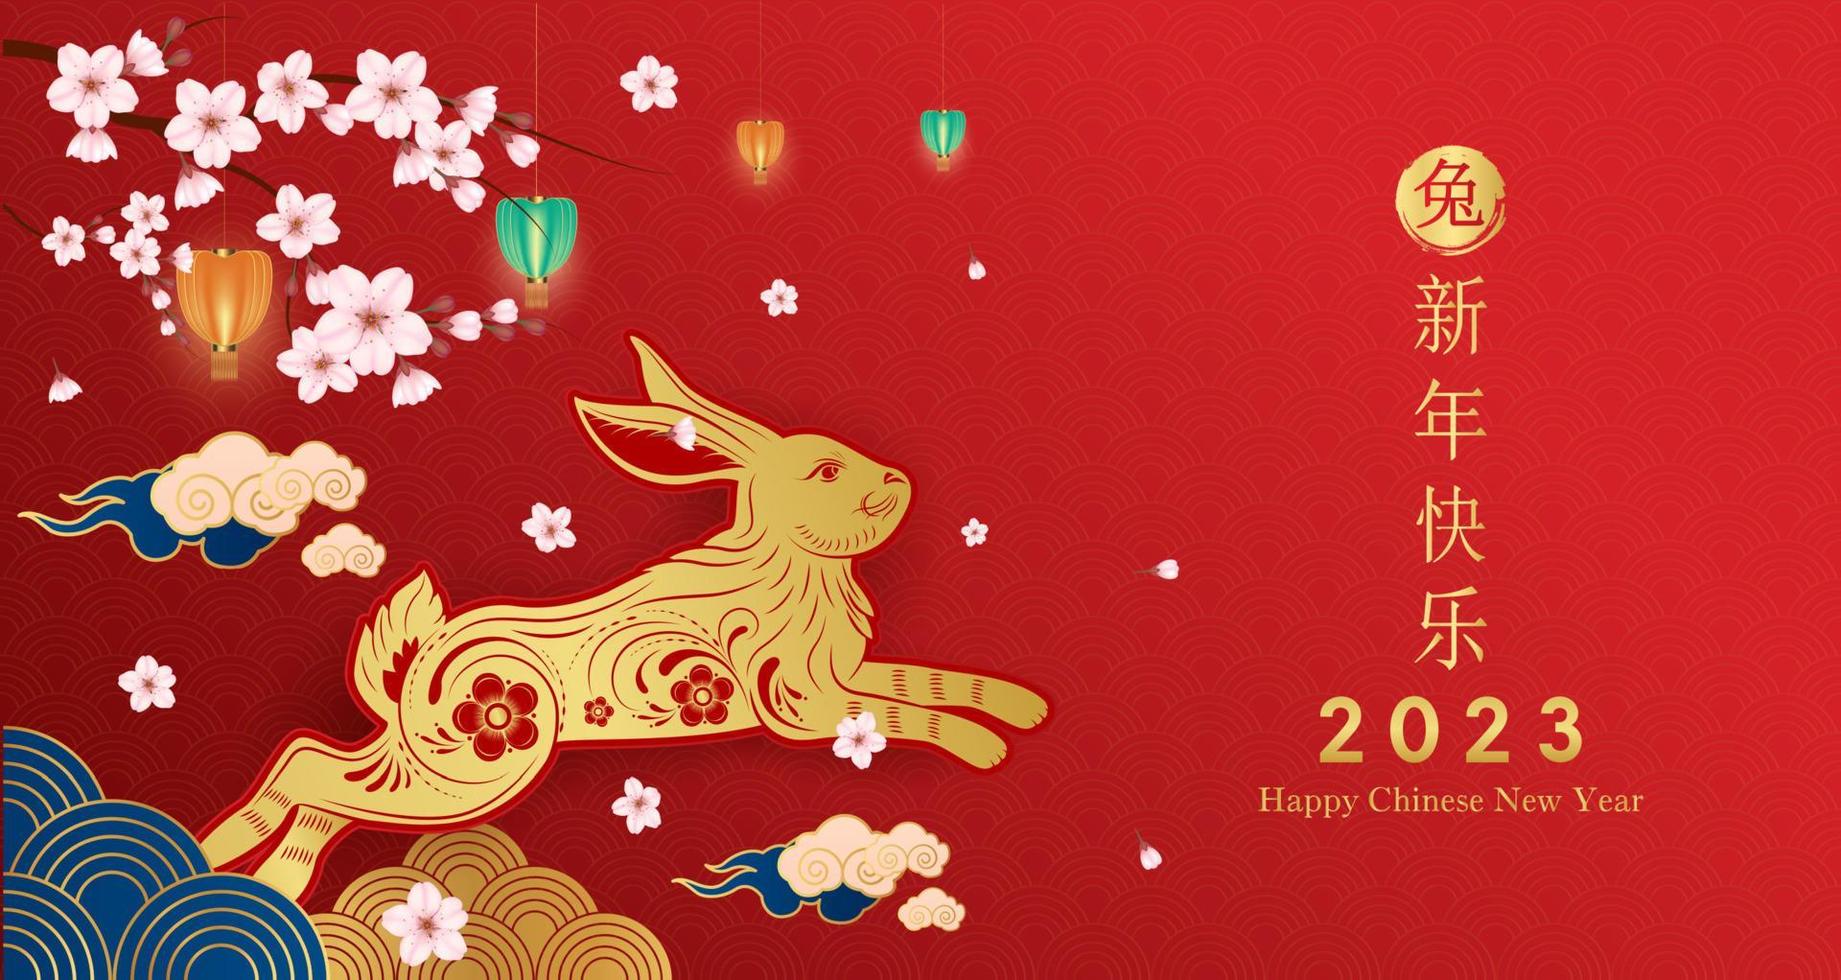 kort gott kinesiskt nytt år 2023, kanin stjärntecken på röd bakgrund. element med hantverk kanin och sakura blomma. kinesisk översättning gott nytt år 2023, kaninens år. vektor eps10.